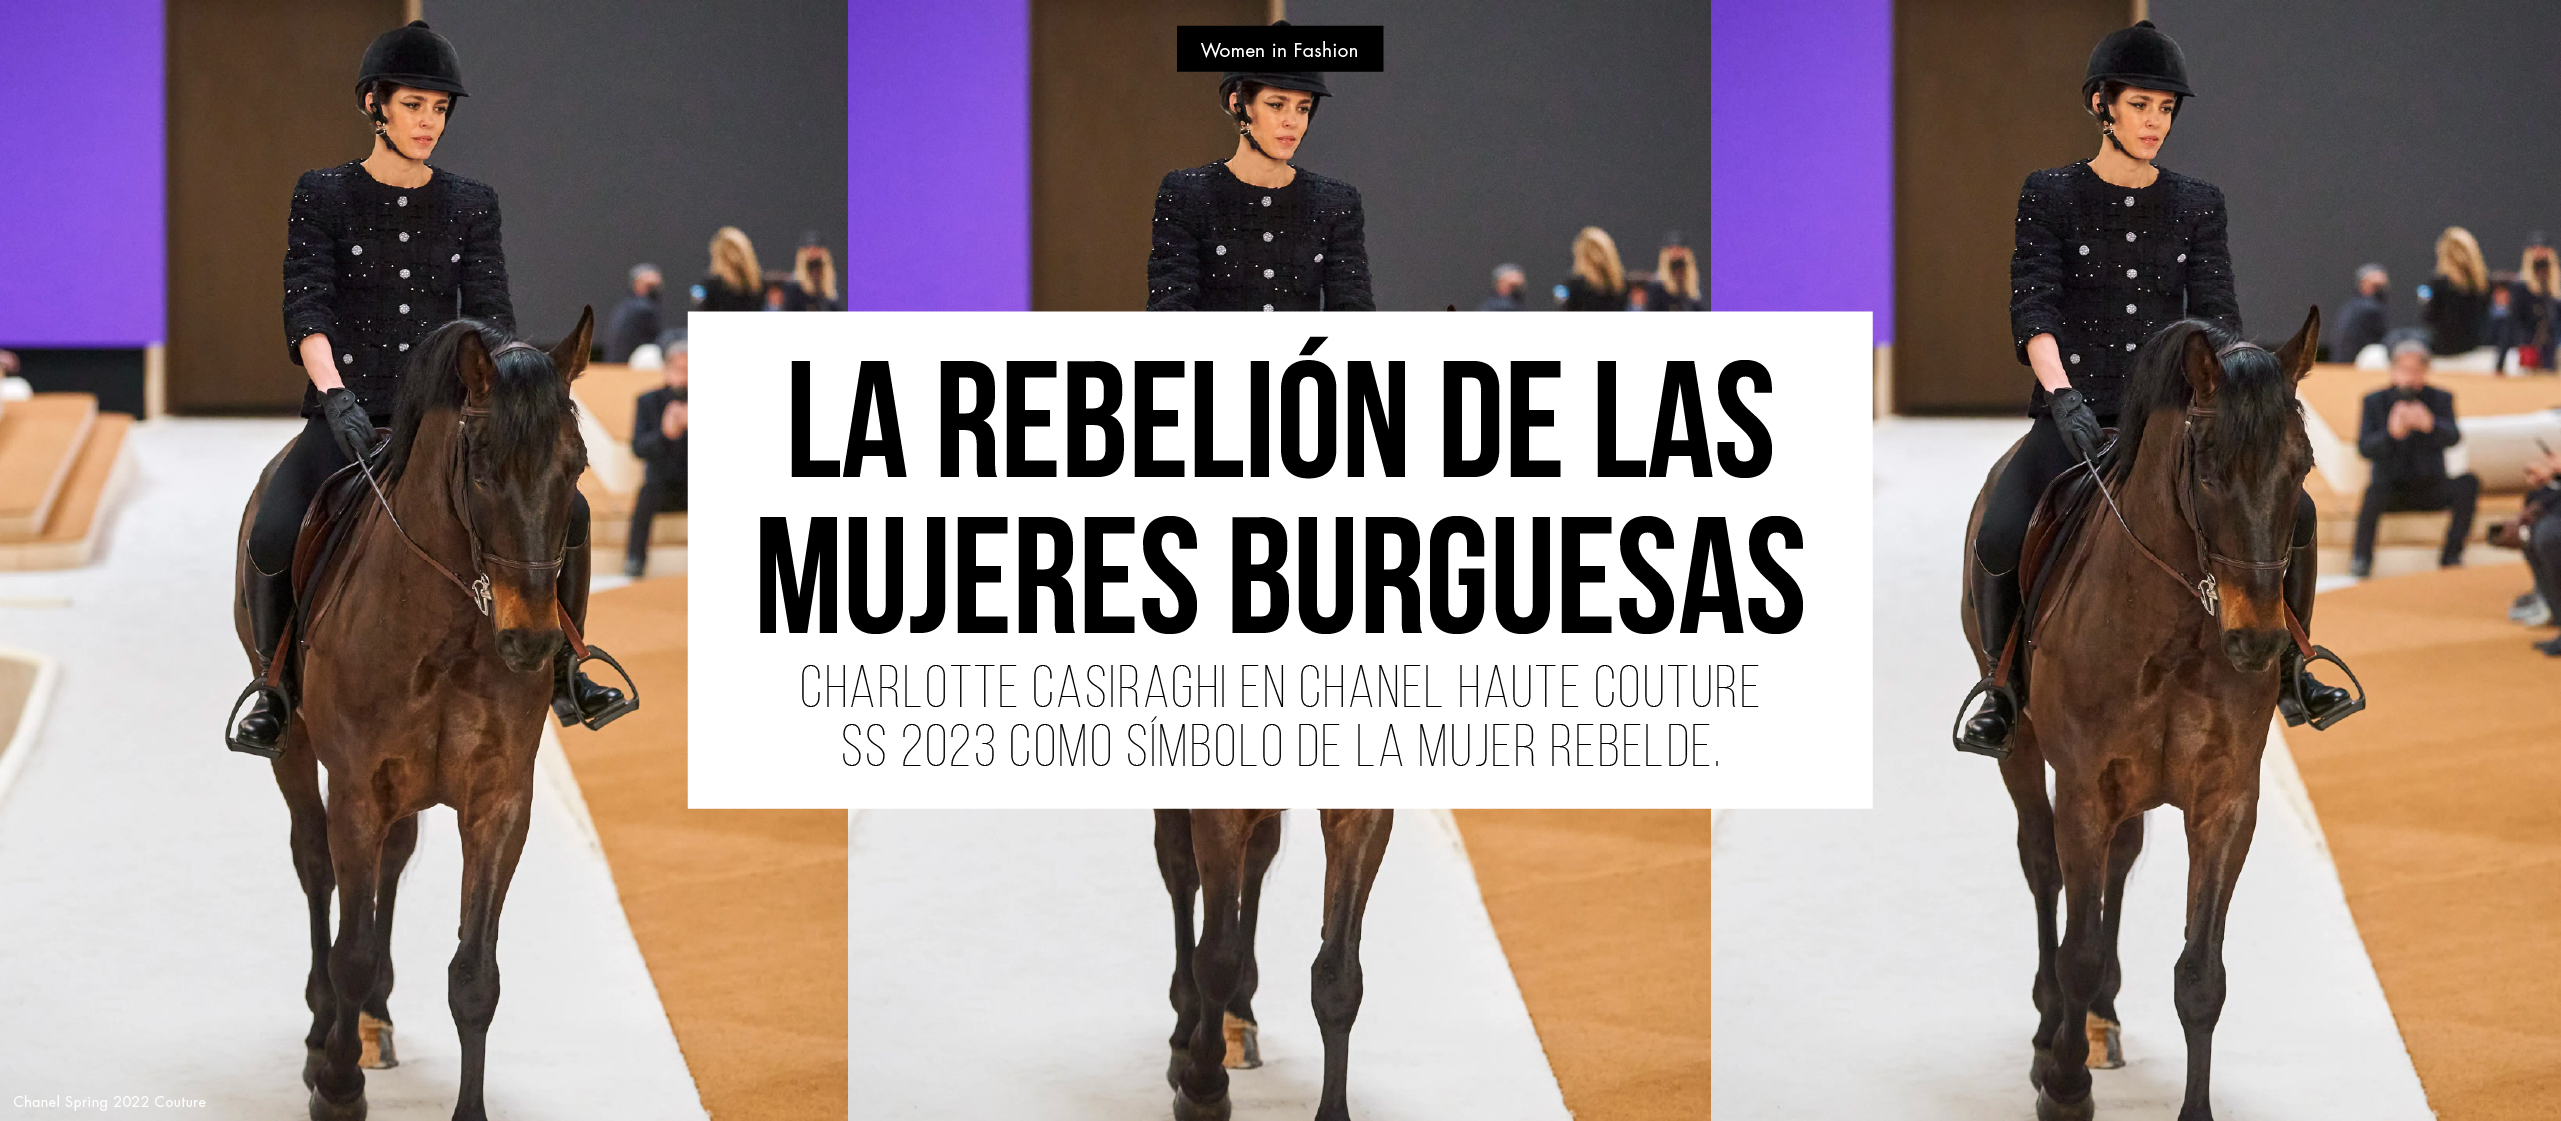 La rebelión de las mujeres burguesas. Charlotte Casiraghi en Chanel Haute Couture SS 2022 como símbolo de la mujer rebelde.